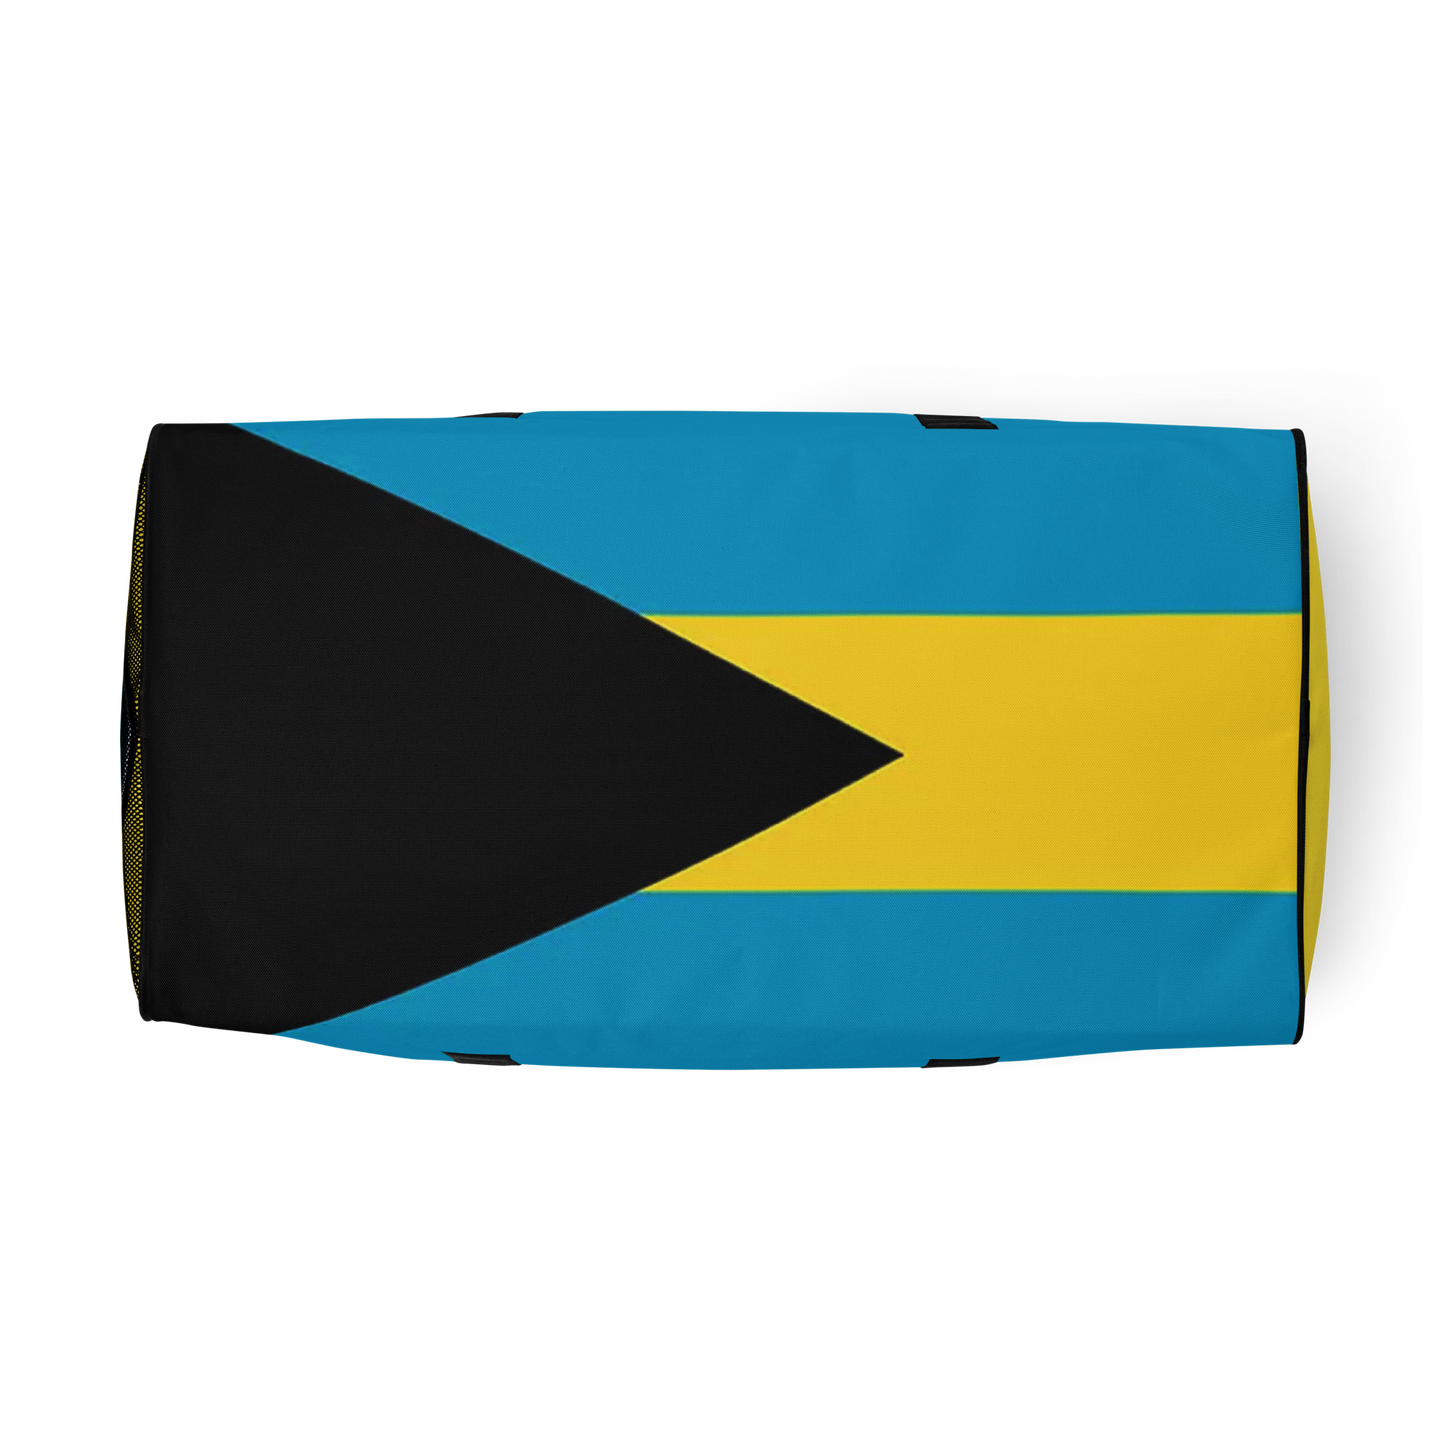 Bahamas Duffle bag